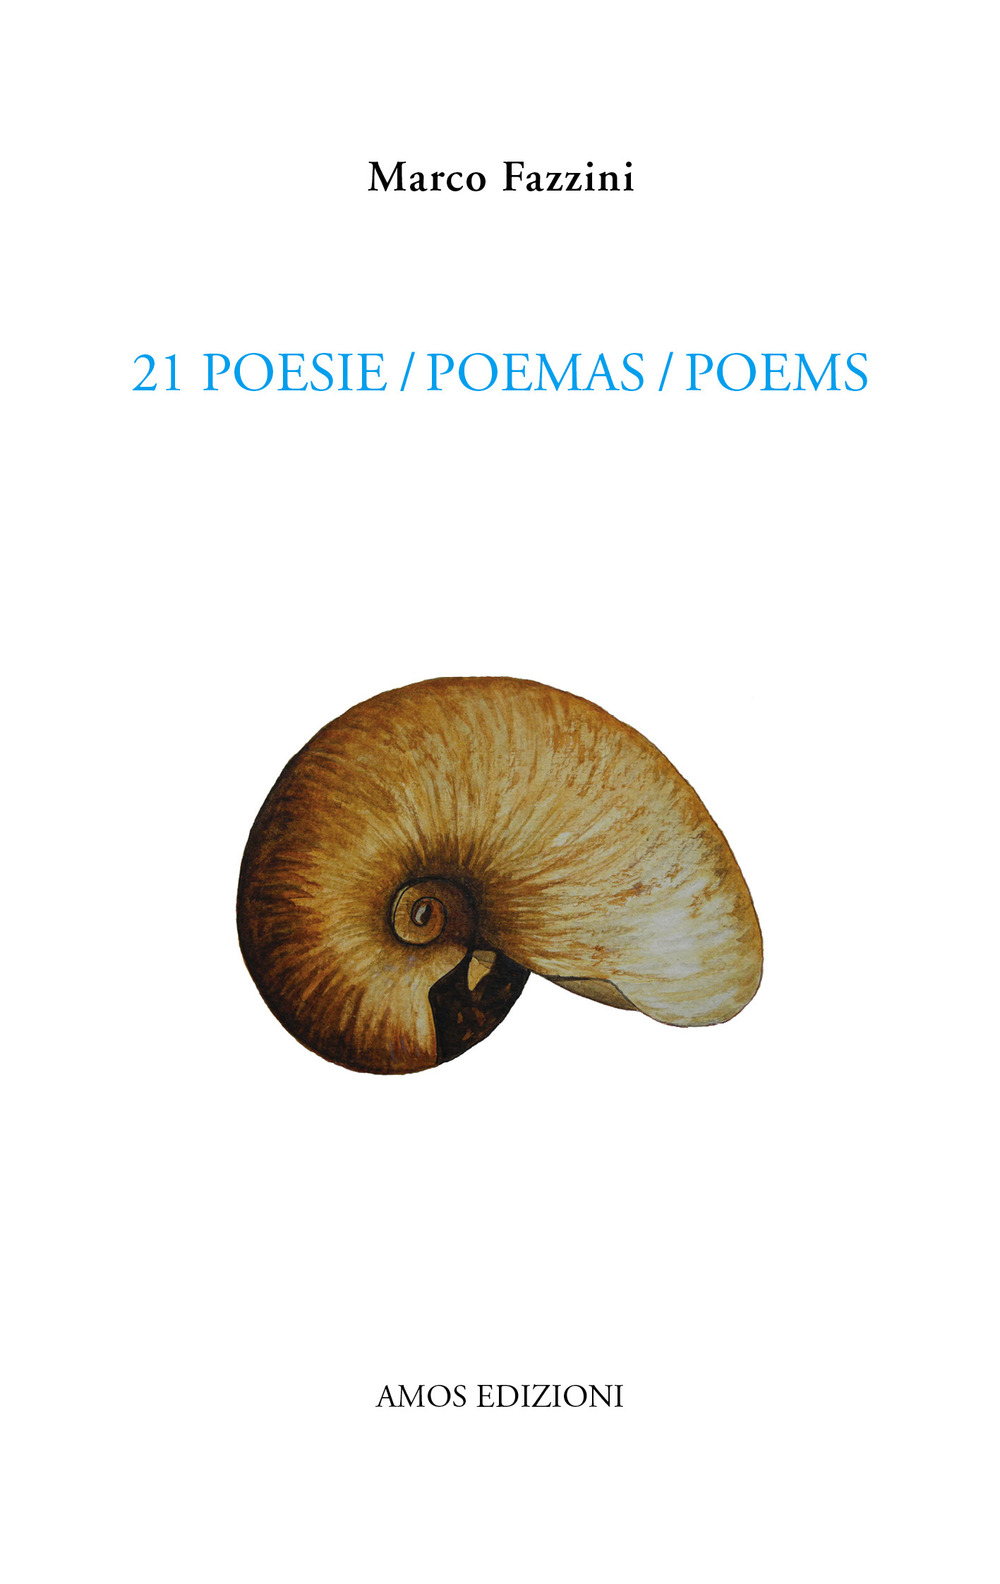 21 poesie-poemas-poems